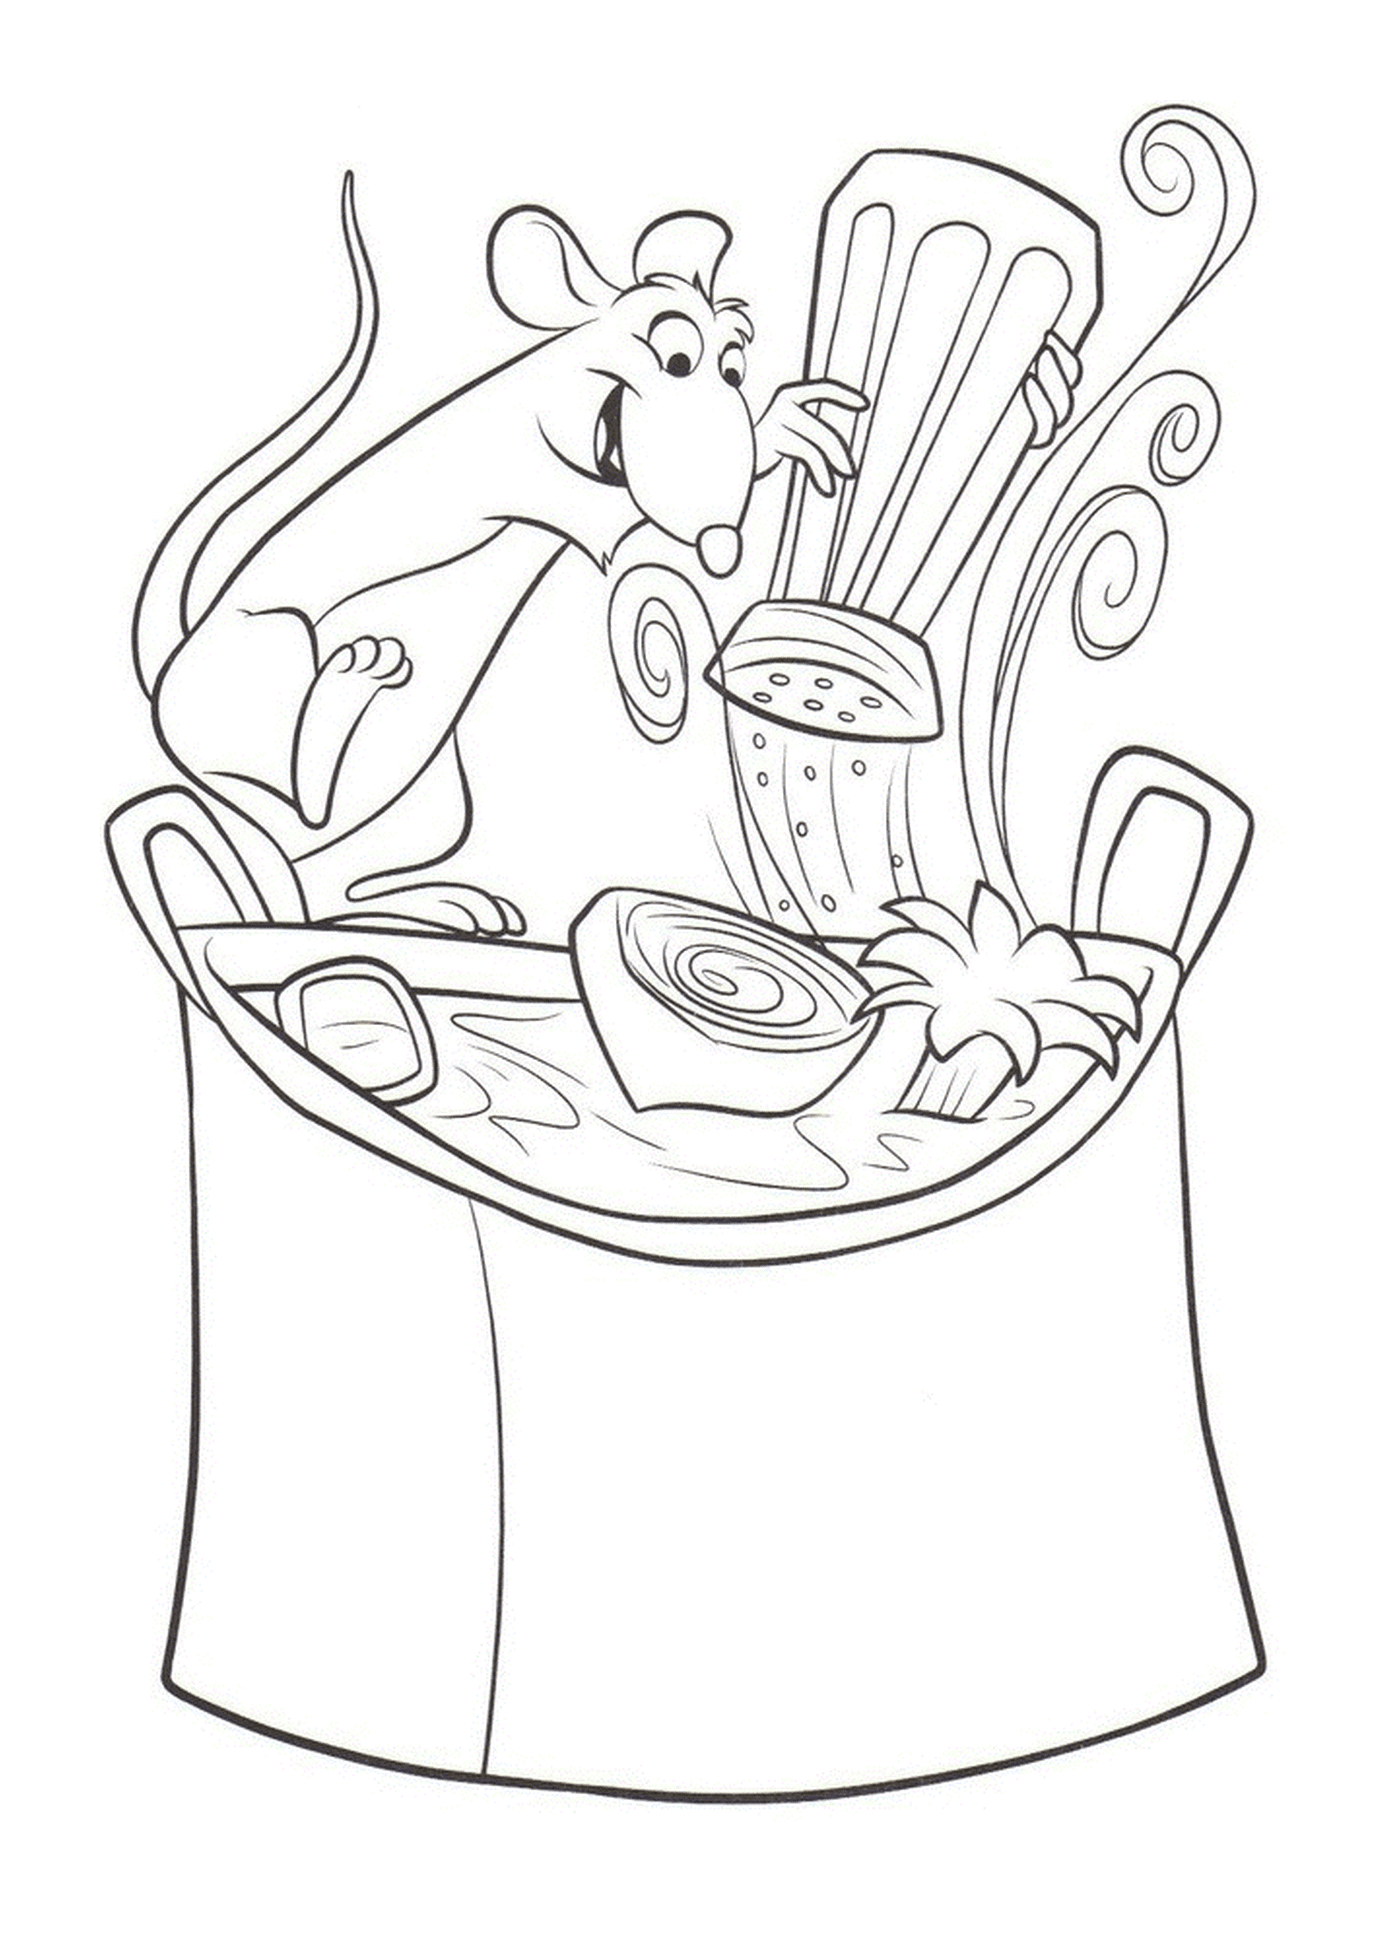  Ratatouille: a mouse making a recipe 